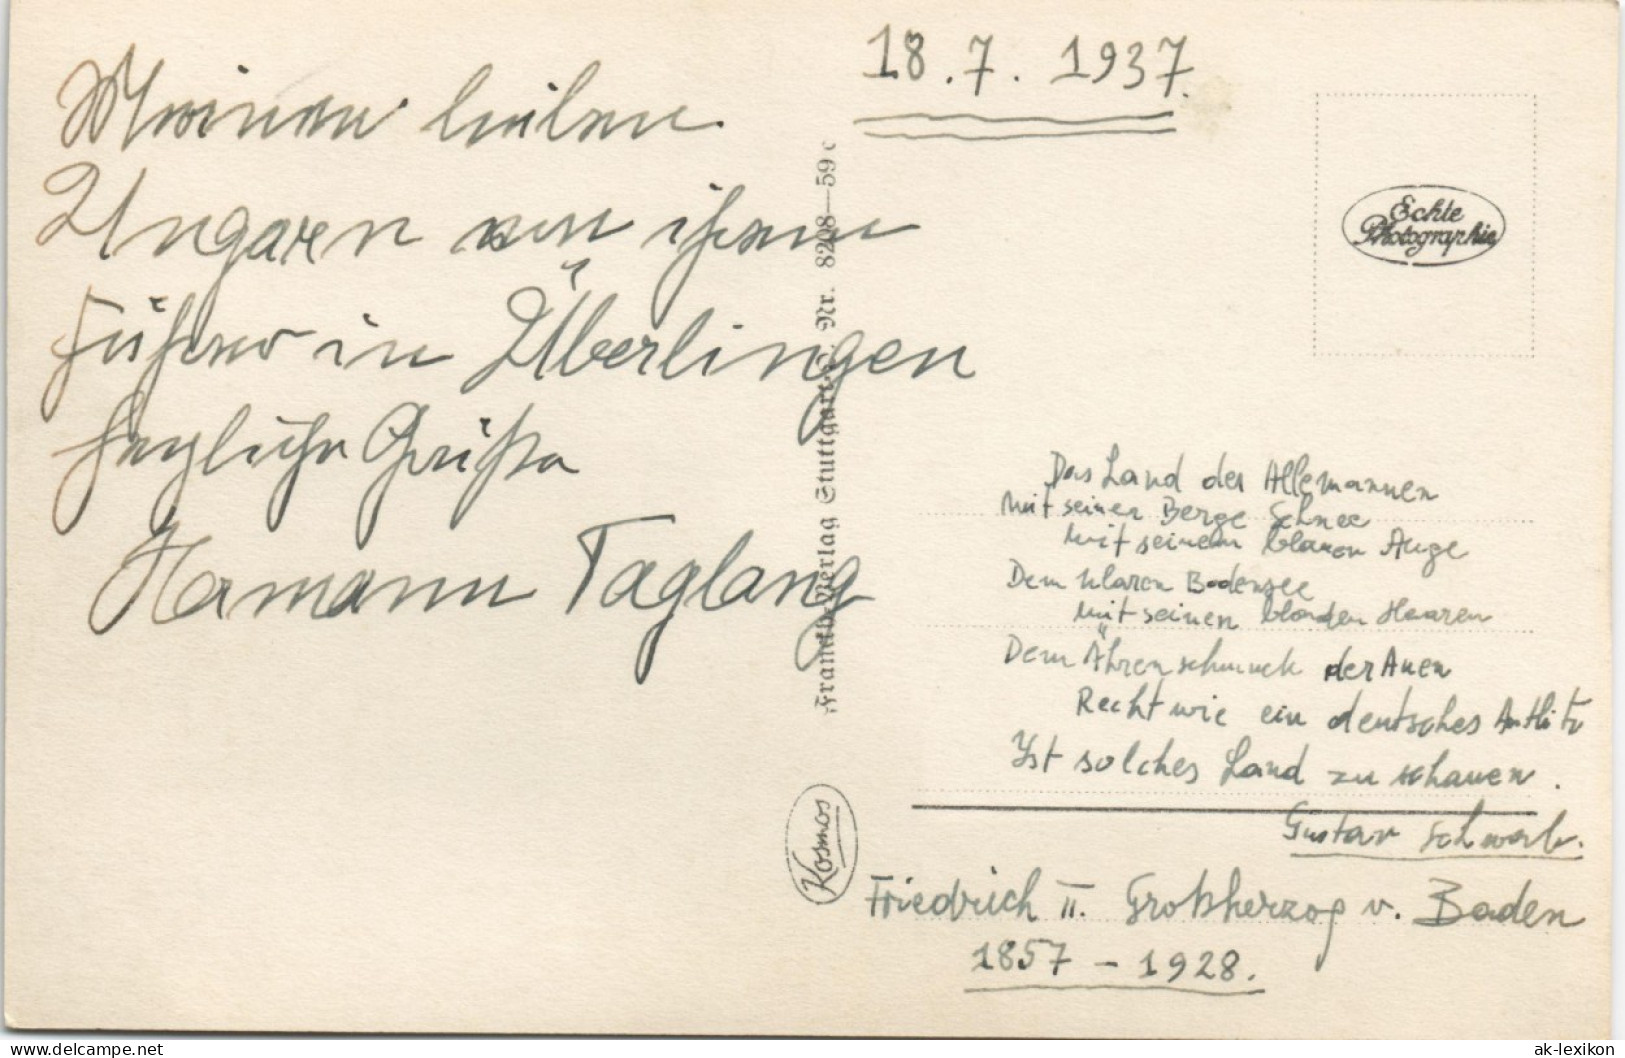 Ansichtskarte Überlingen Landkarte, Dampfer, Umland Mehrbild 1937 - Überlingen